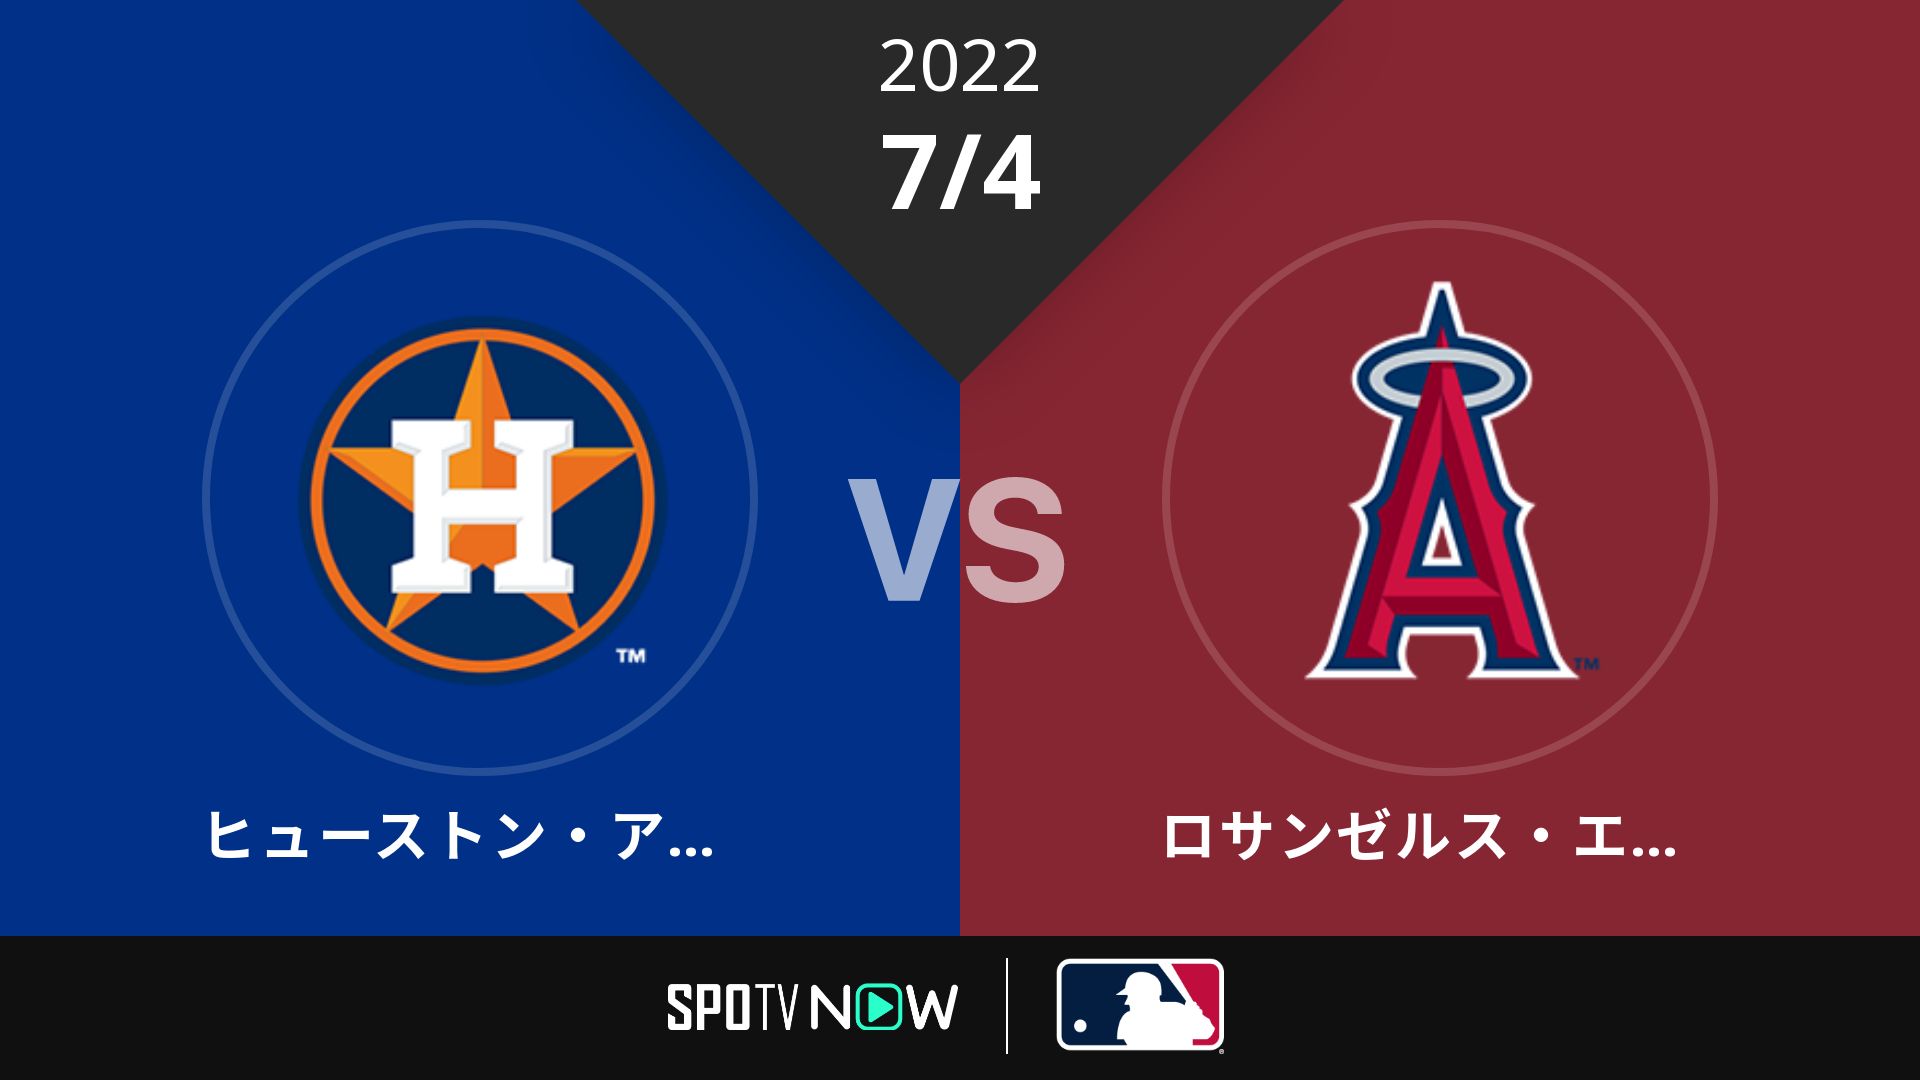 2022/7/4 アストロズ vs エンゼルス [MLB]